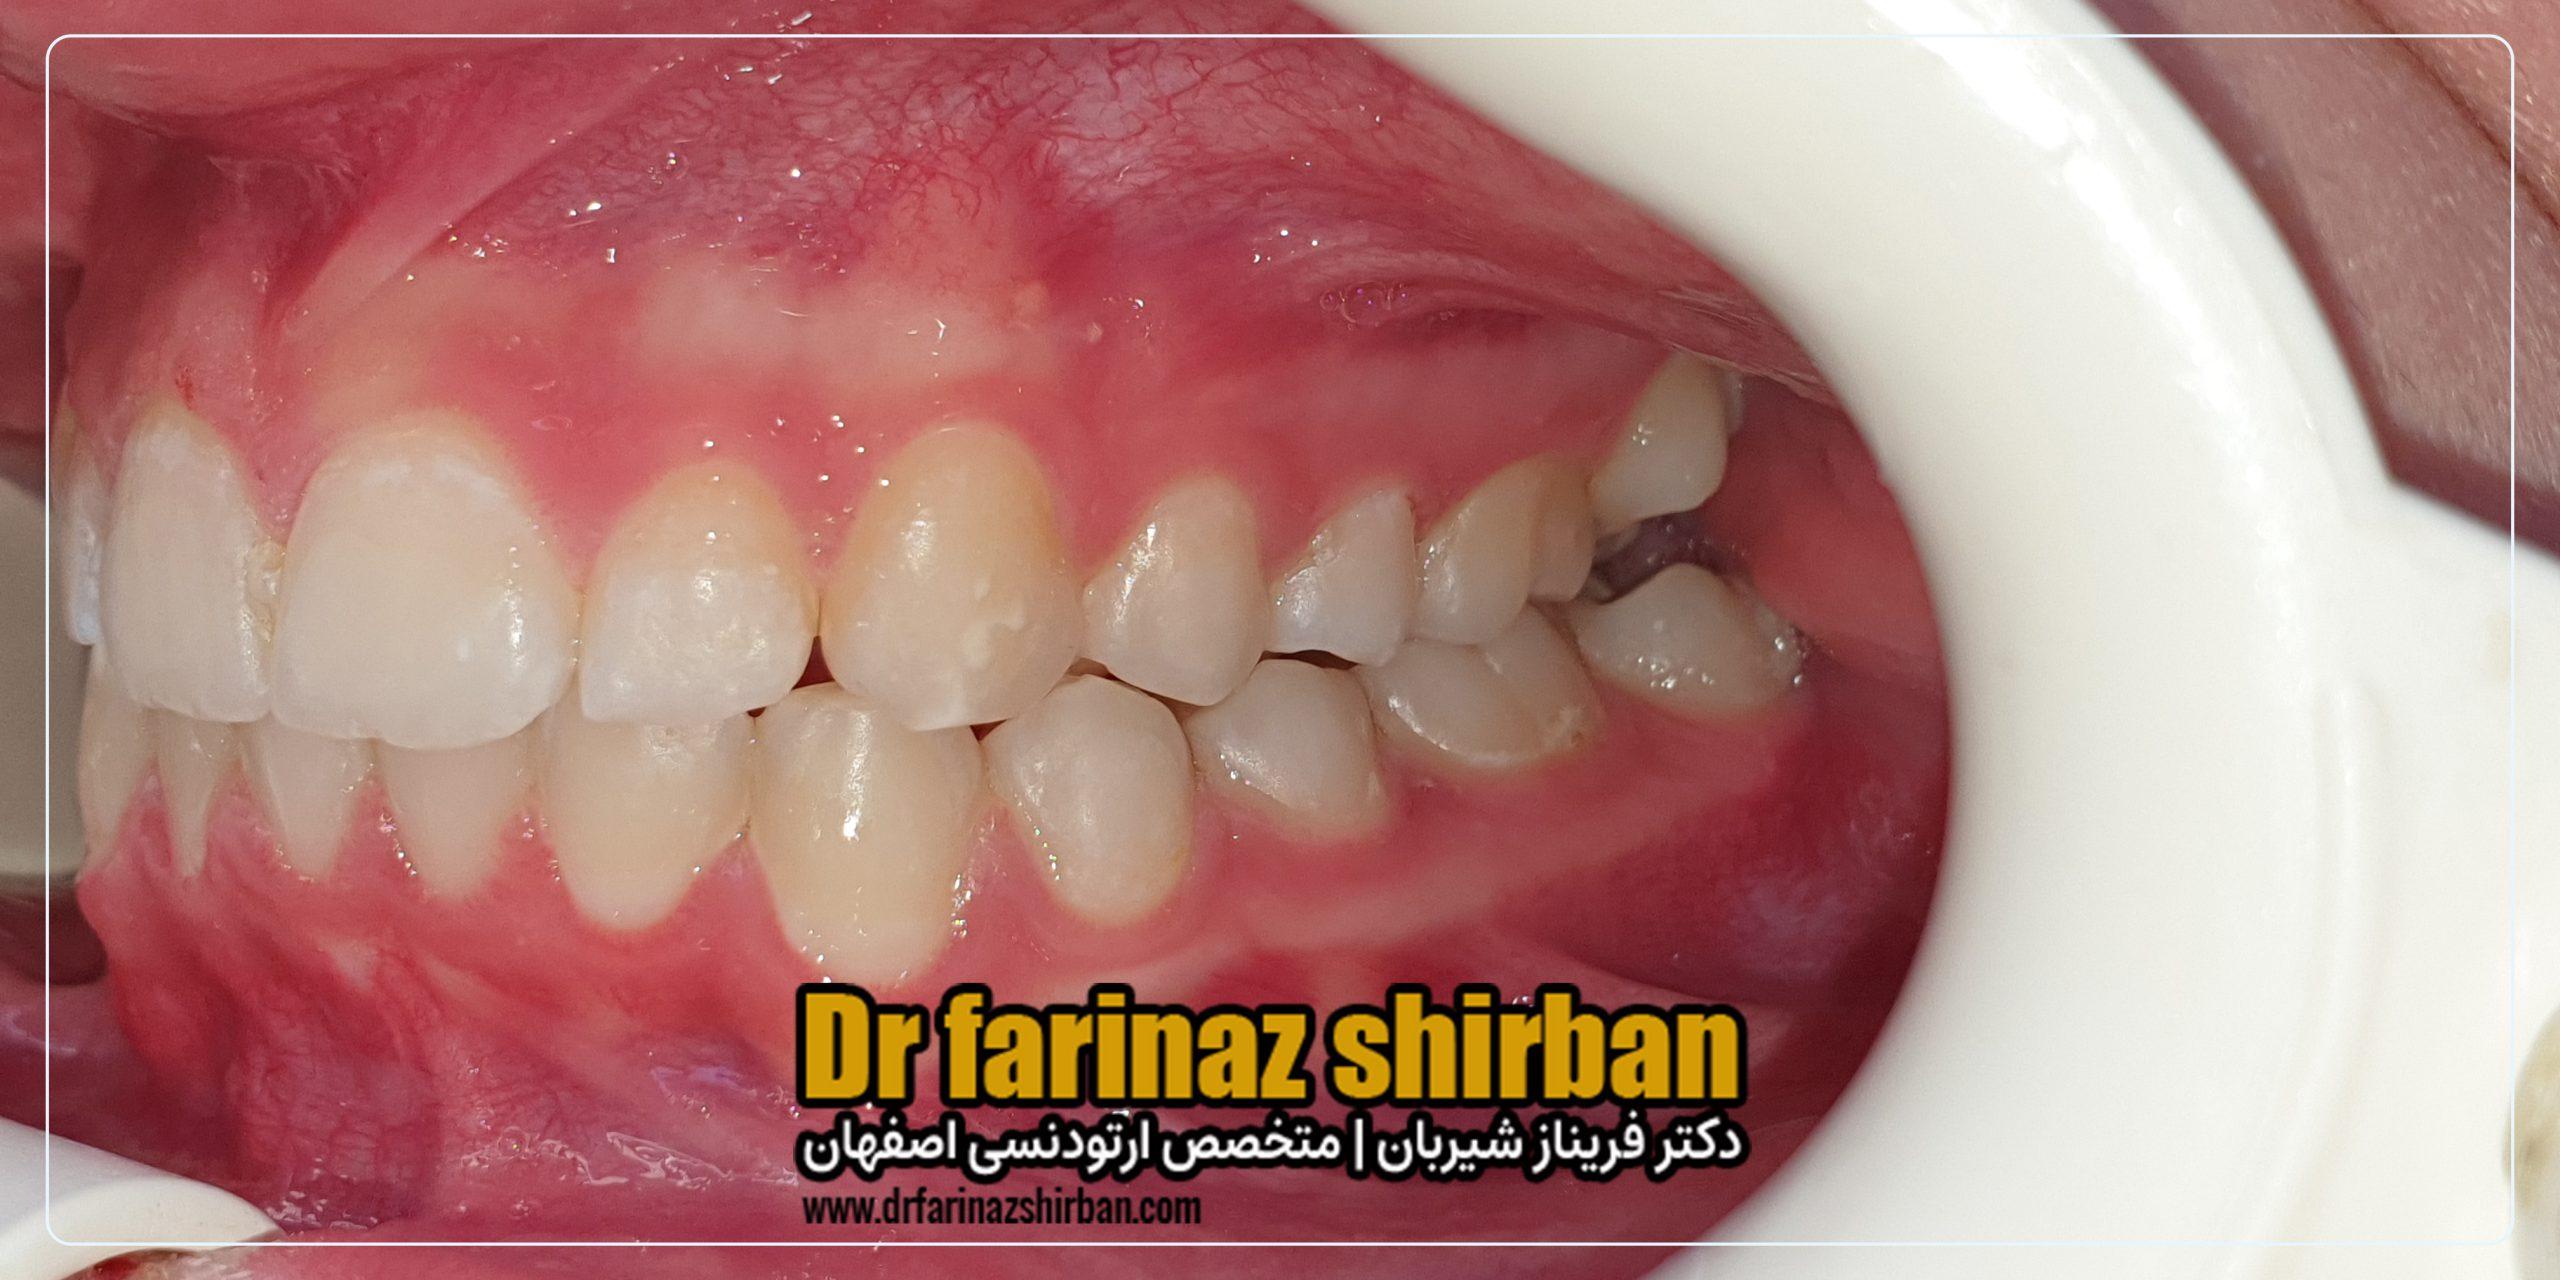 اصلاح تنگی قوس فک و نامنظمی دندان ها بدون جراحی و کشیدن دندان با متخصص ارتودنسی در اصفهان